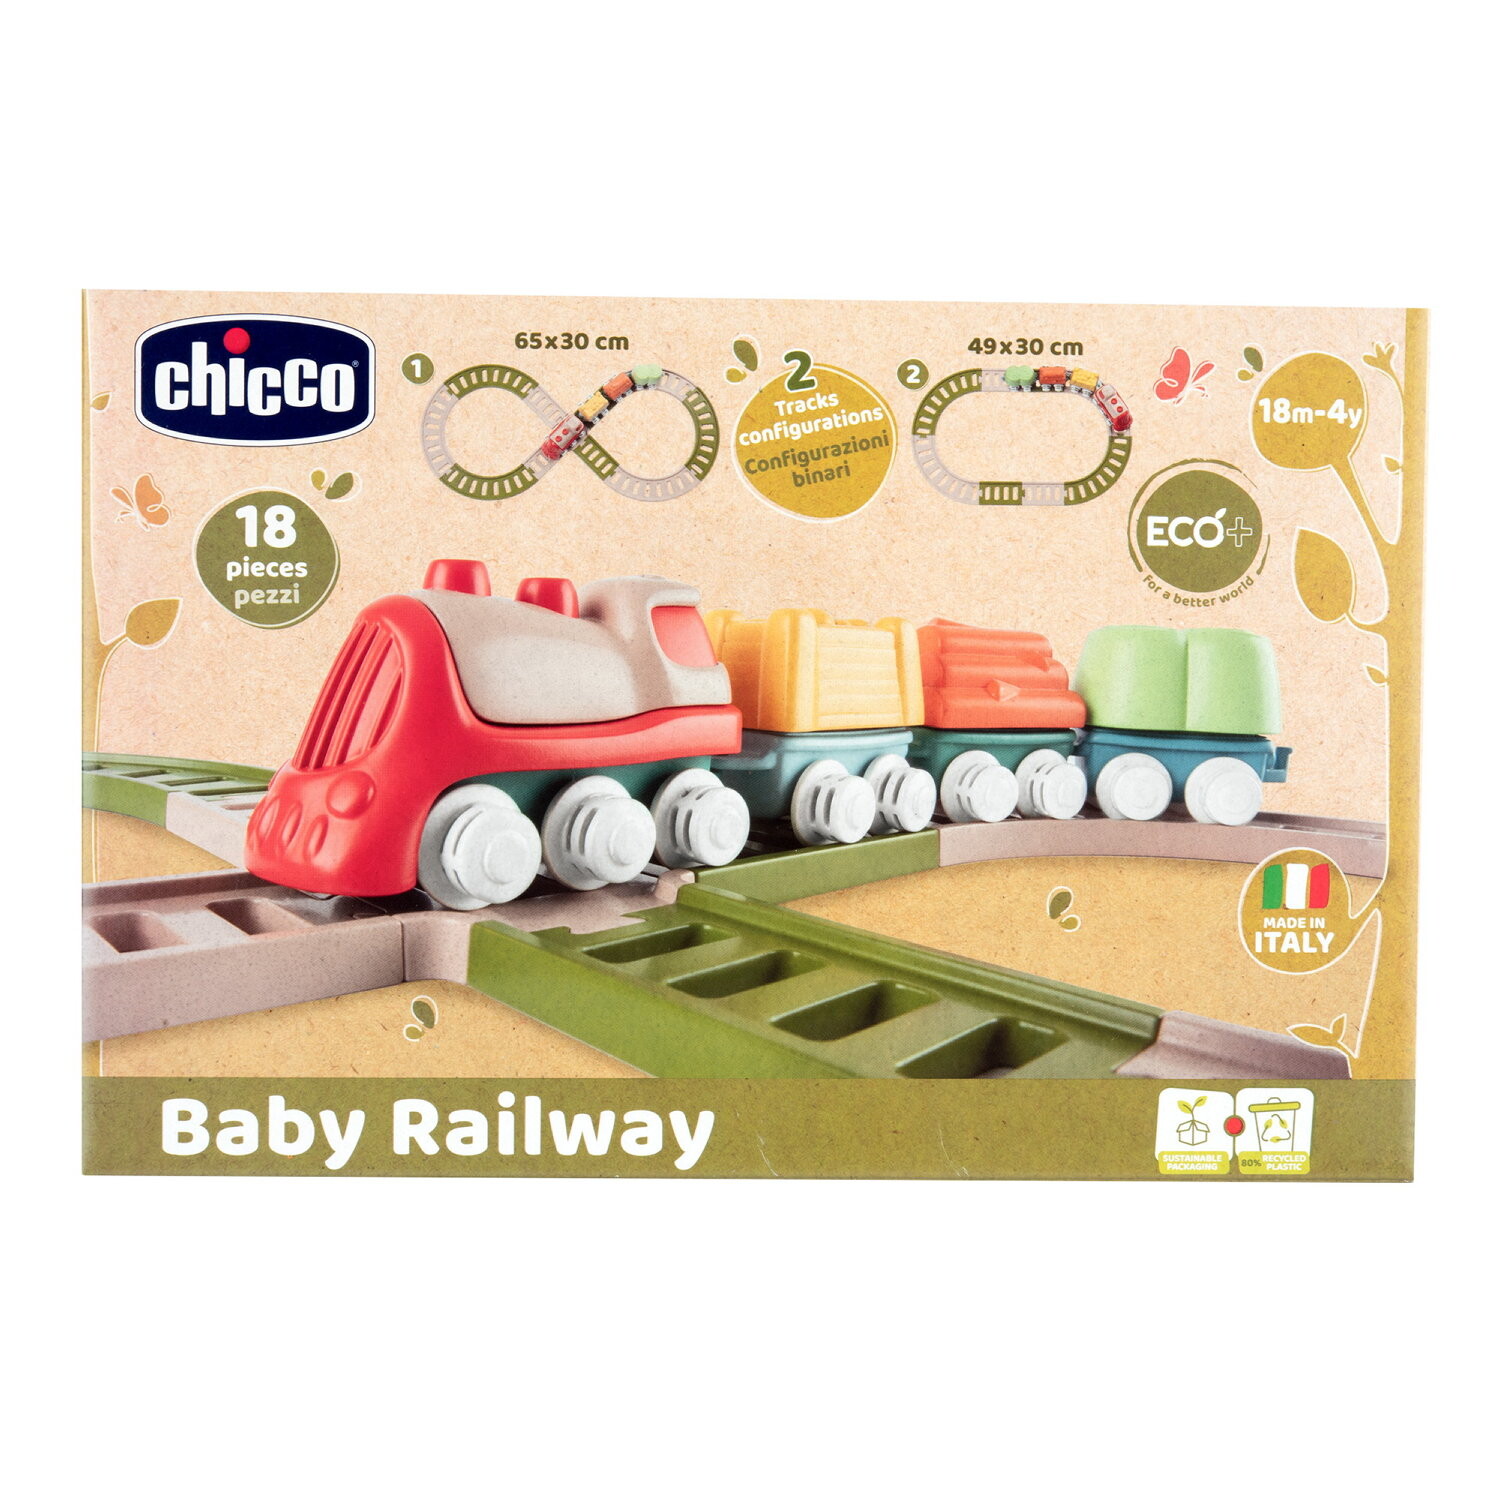 Chicco - trenino con playset linea eco+, 18 mesi-3 anni - Chicco